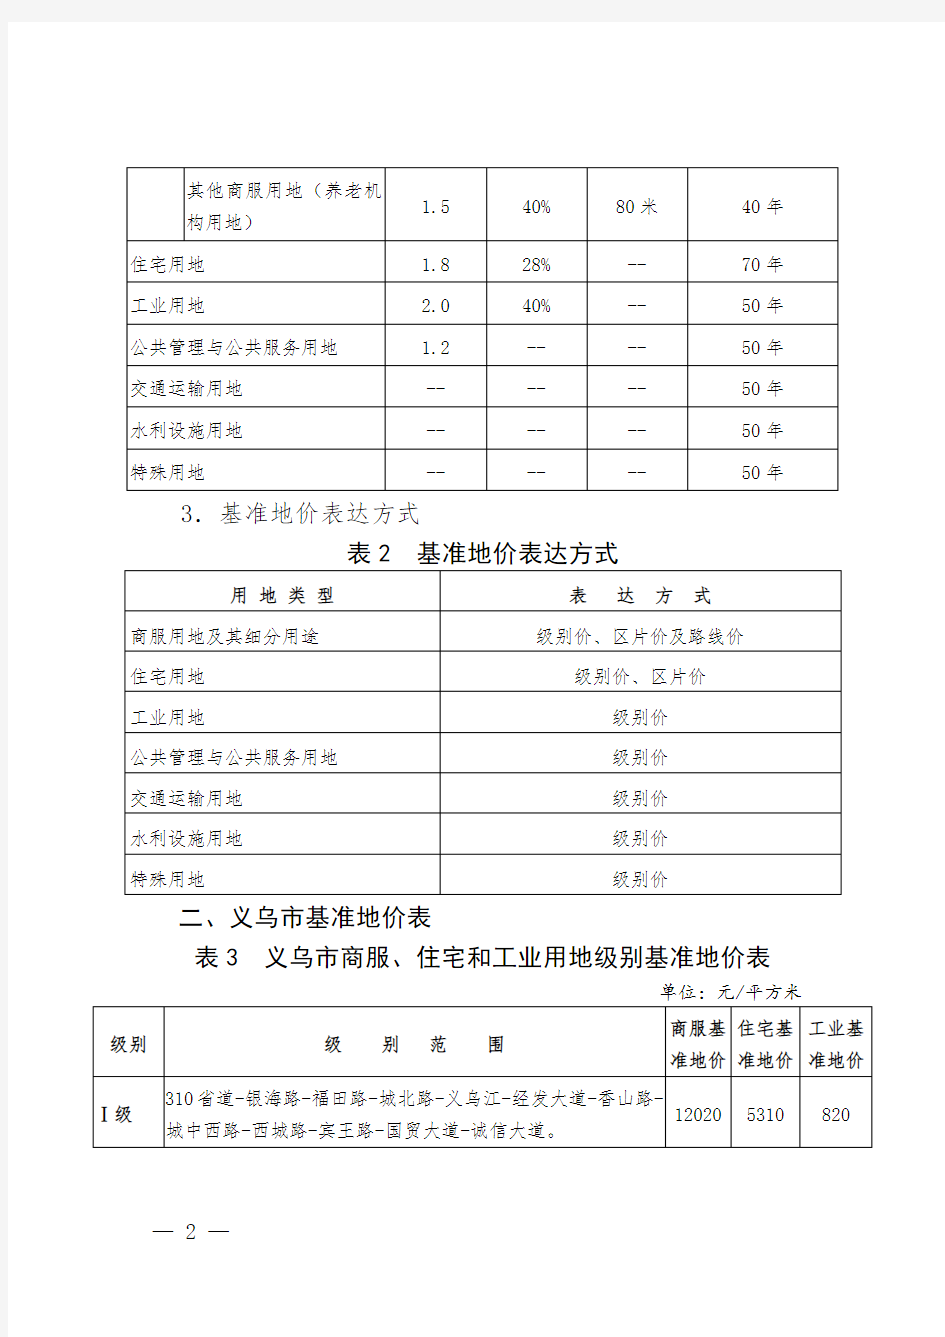 义乌市2015年基准地价一览表-附件